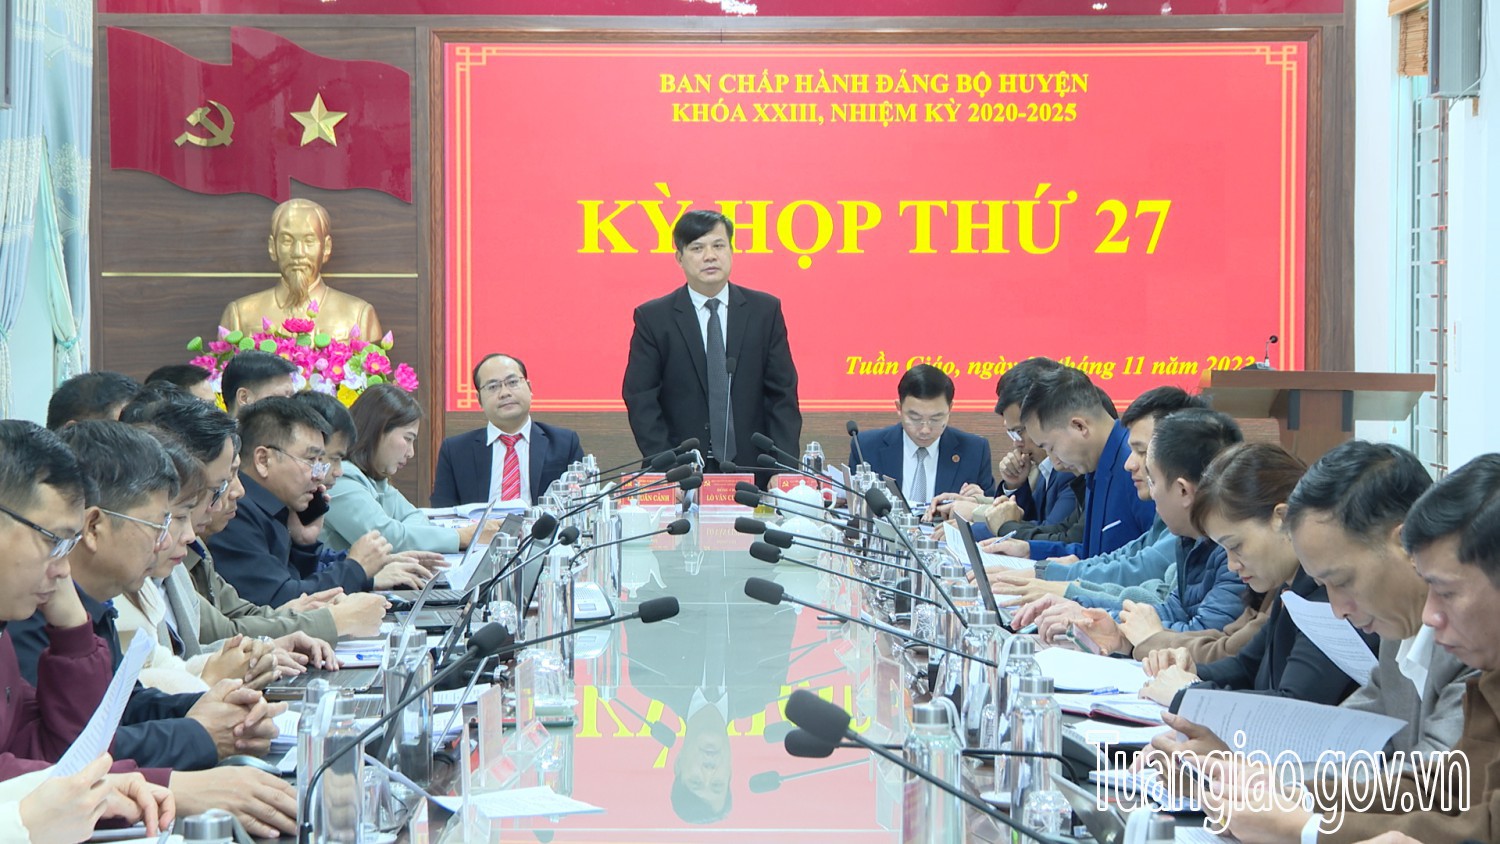 BCH Đảng bộ huyện Tuần Giáo, khoá XXIII, nhiệm kỳ 2020-2025 tổ chức kỳ họp thứ 27 mở rộng